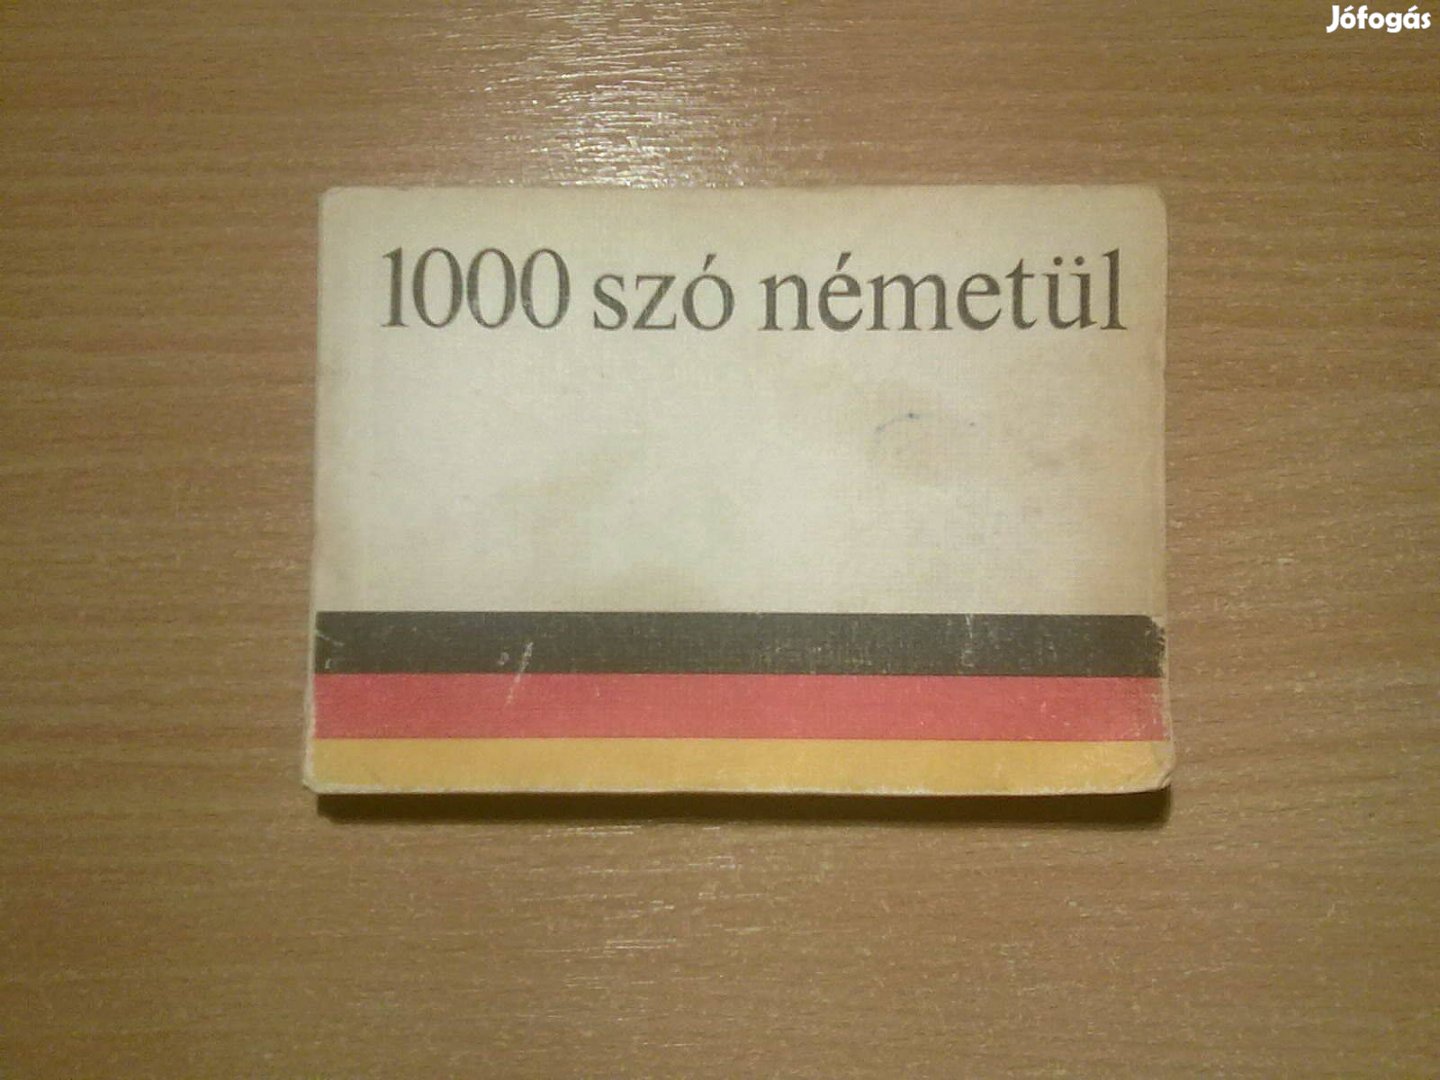 1000 szó németül